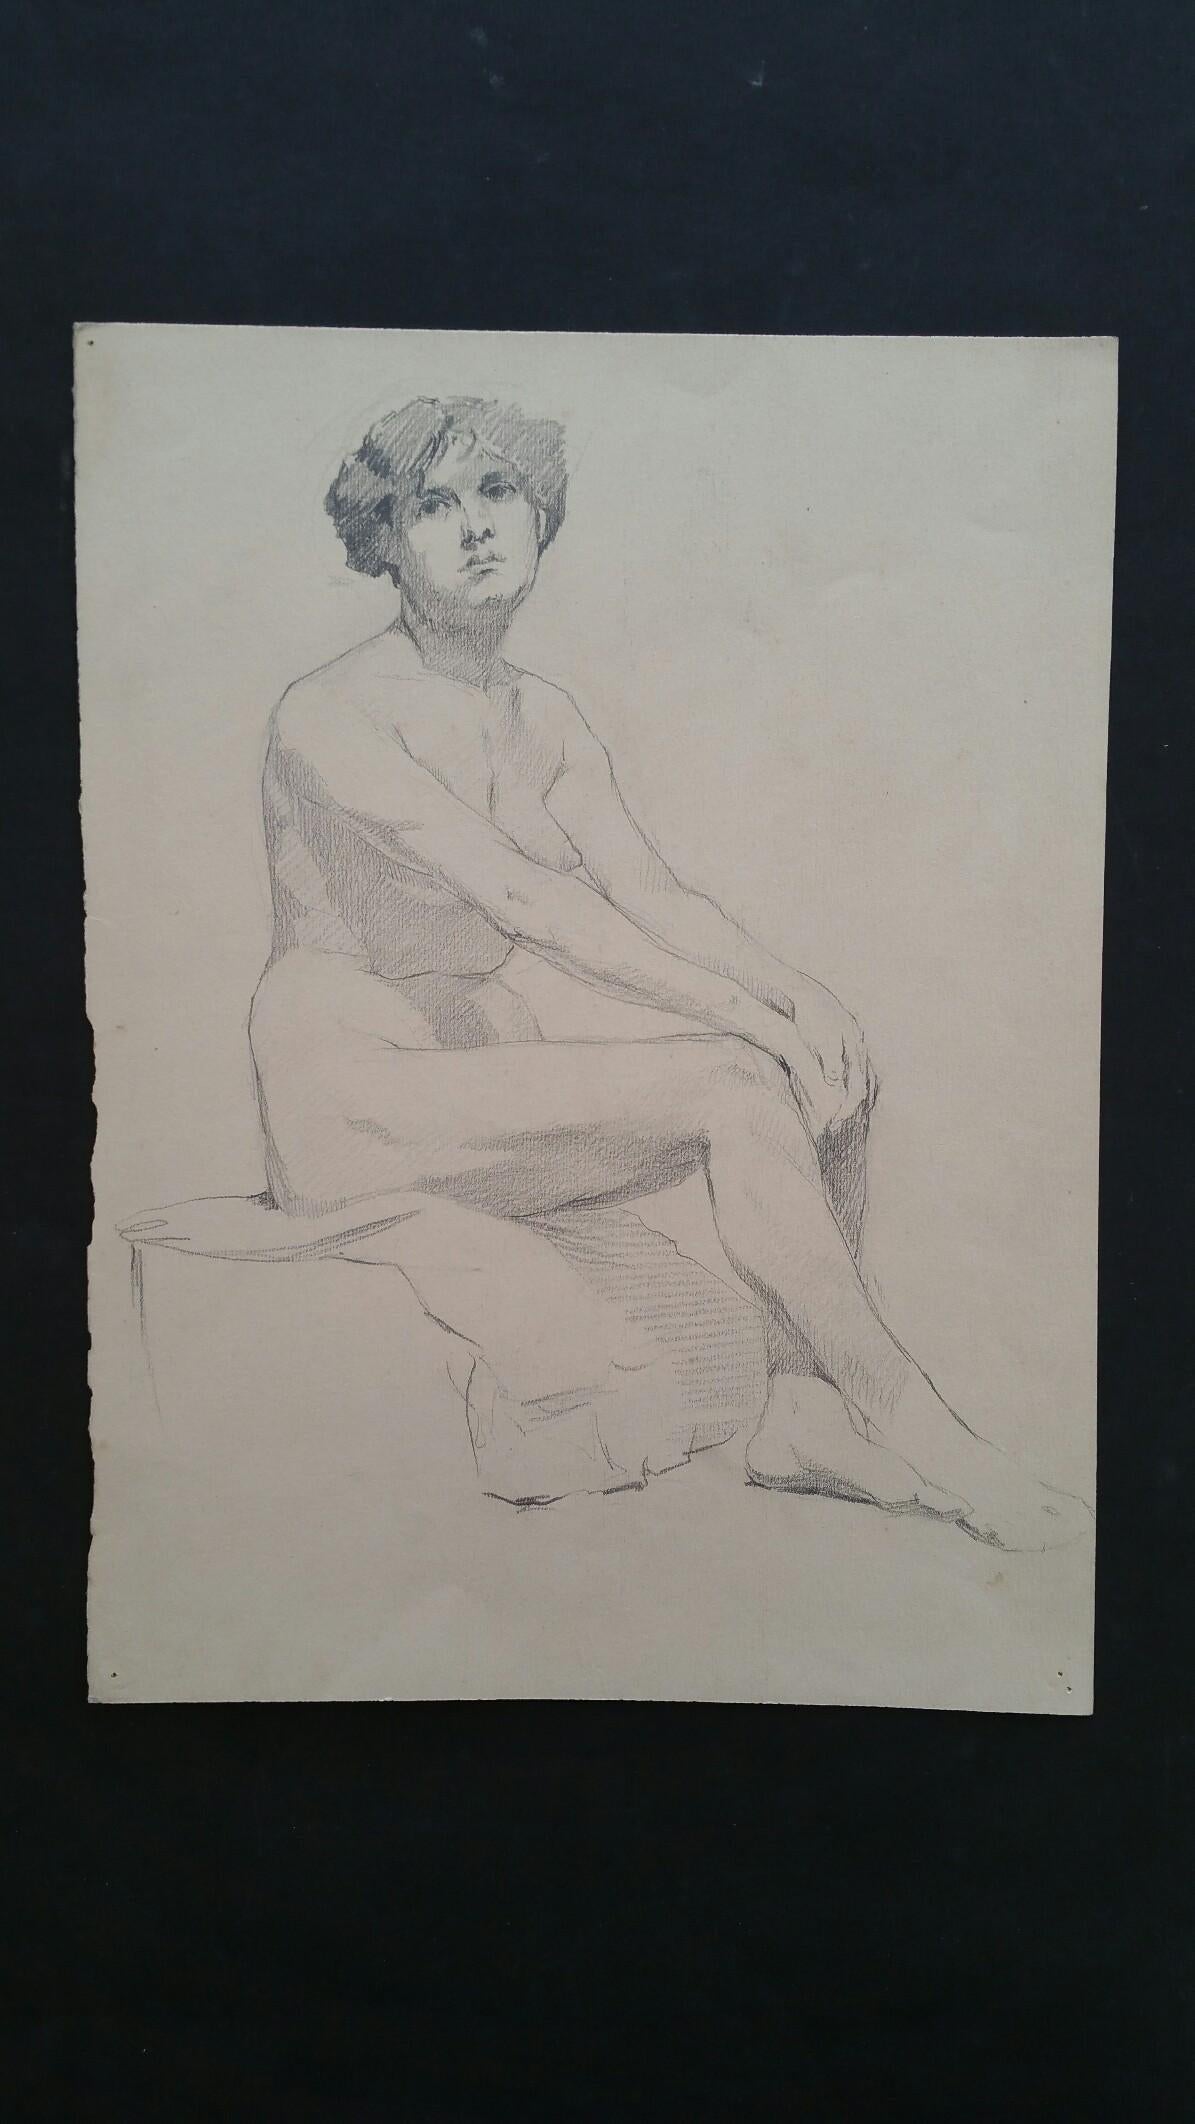 Esquisse à la mine de plomb d'une femme nue, assise de profil, anglaise
par Henry George Moon (britannique, 1857-1905)
sur papier d'artiste blanc cassé, non encadré
mesures : feuille 13.5 x 11 pouces 

provenance : de la succession de